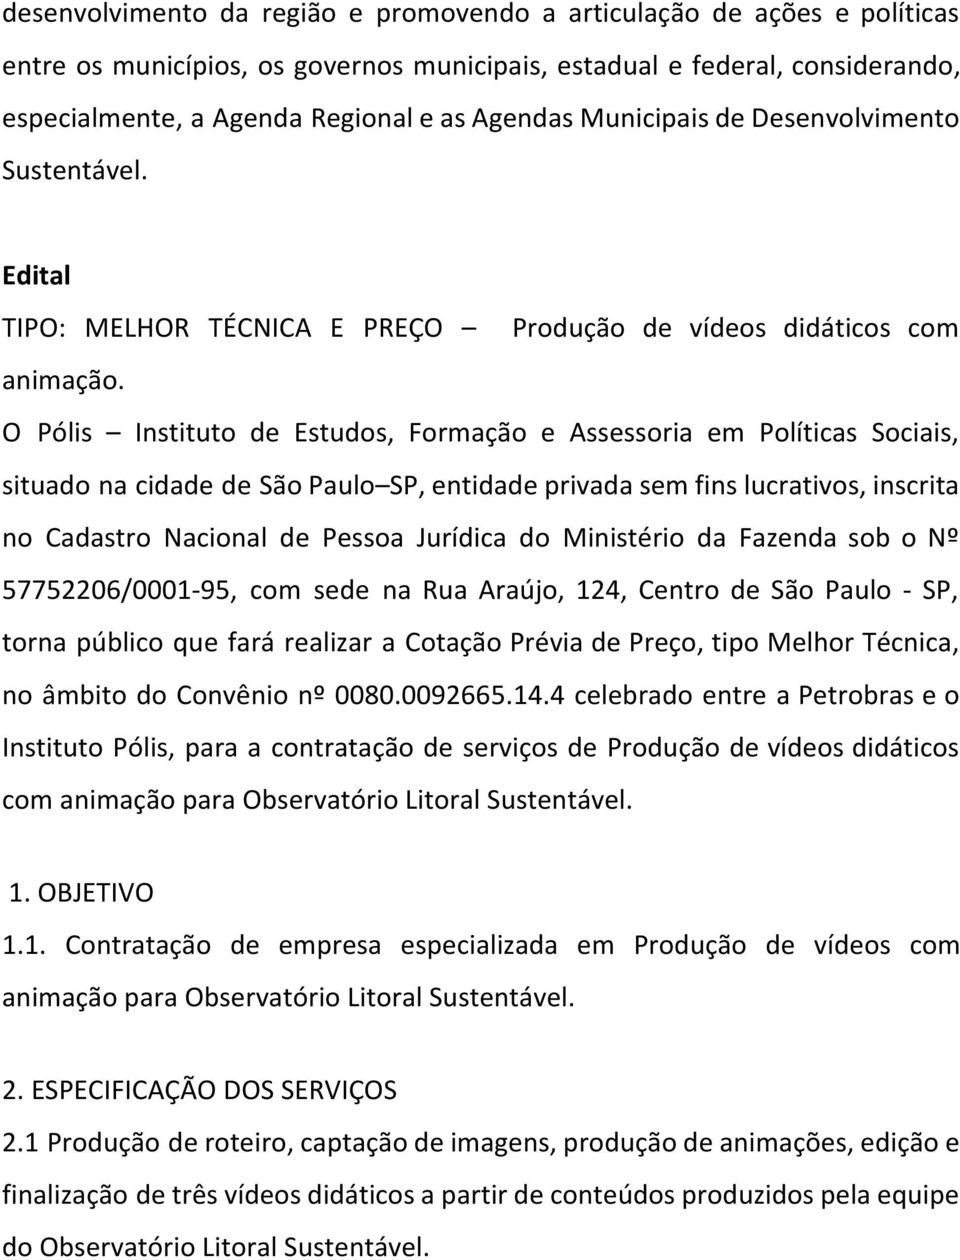 O Pólis Instituto de Estudos, Formação e Assessoria em Políticas Sociais, situado na cidade de São Paulo SP, entidade privada sem fins lucrativos, inscrita no Cadastro Nacional de Pessoa Jurídica do